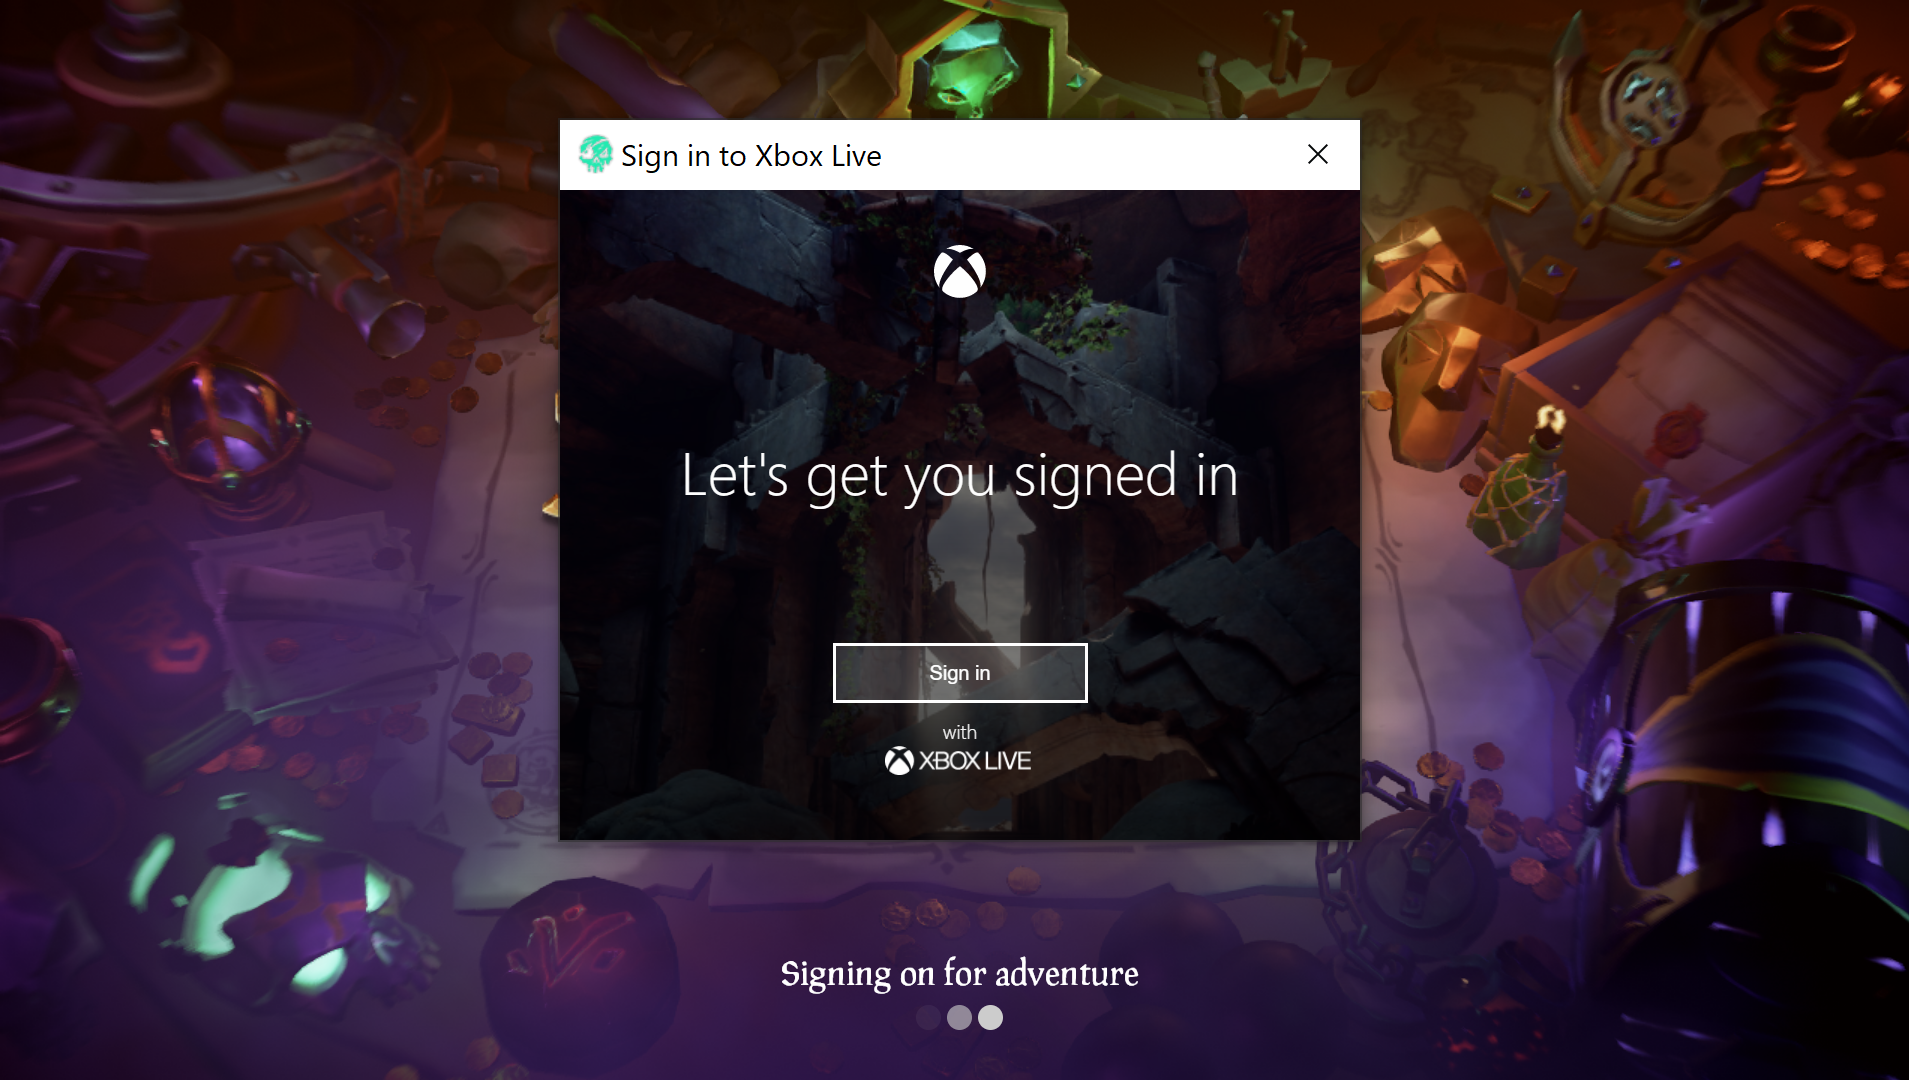 Captura de pantalla que muestra el mensaje de inicio de sesión de Xbox Live